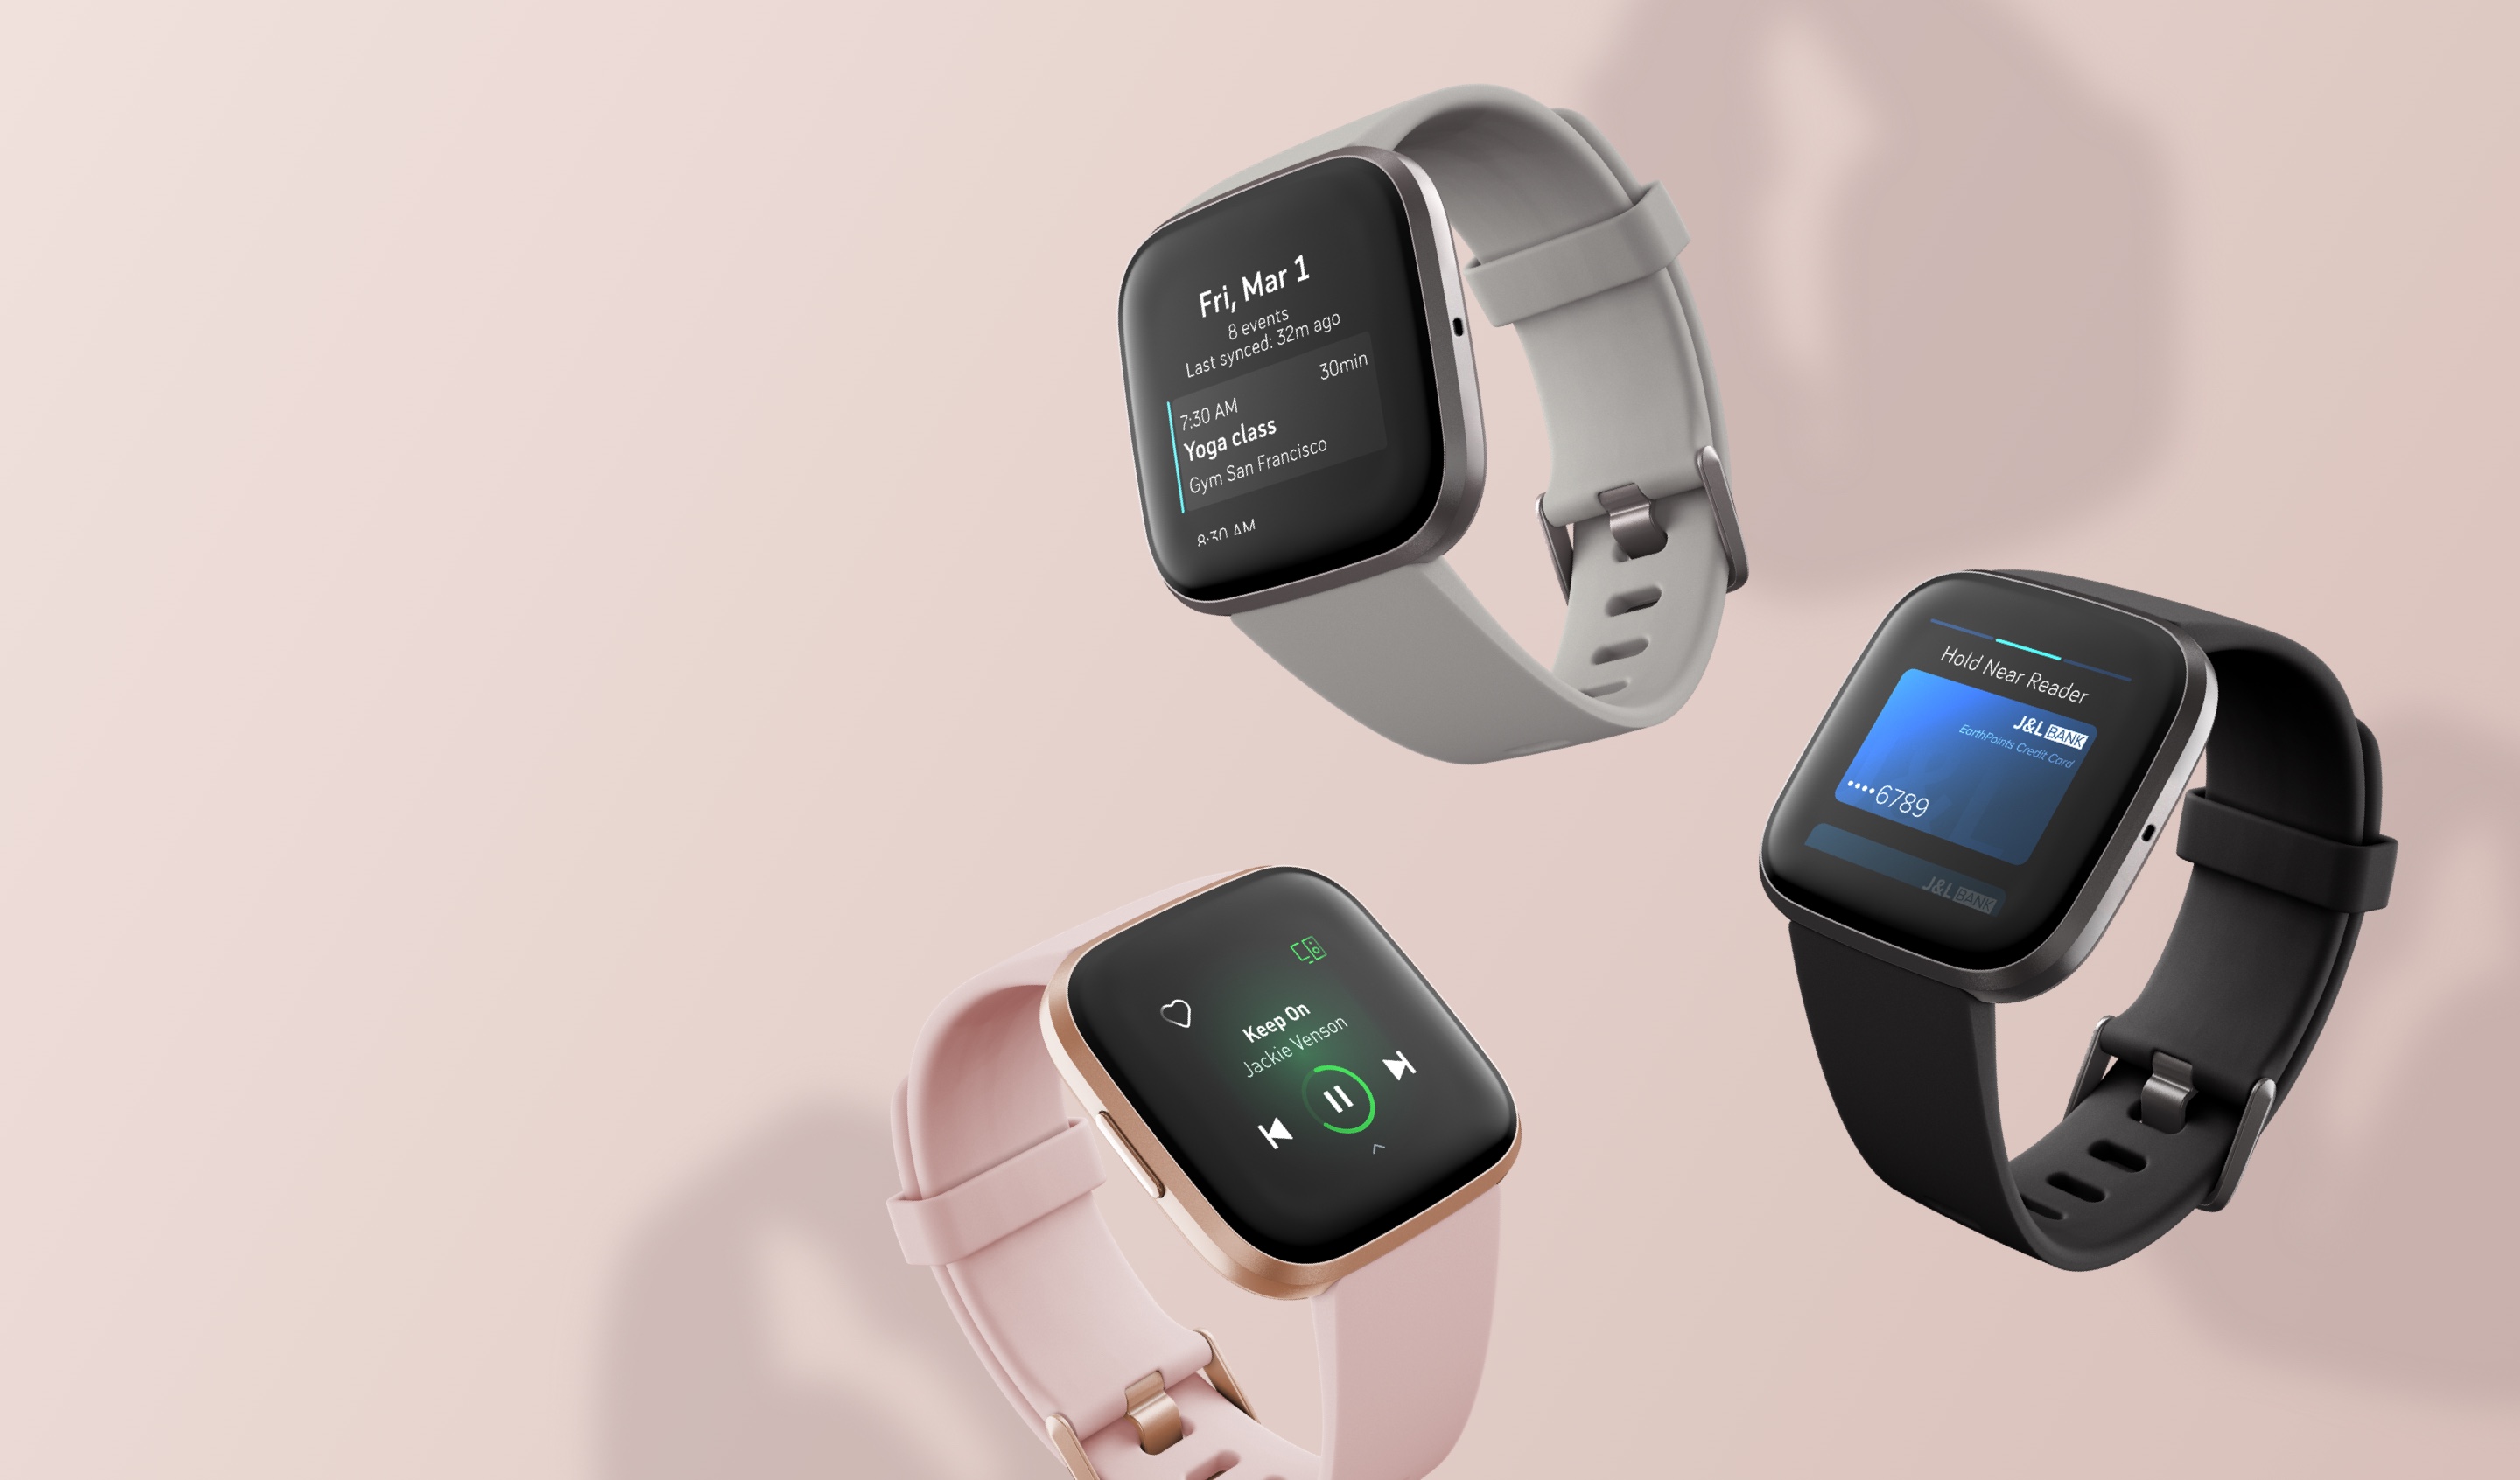 BRAND NEW Grey FITBIT Versa 2 Health & Fitness Smartwatch with Amazon Alexa 